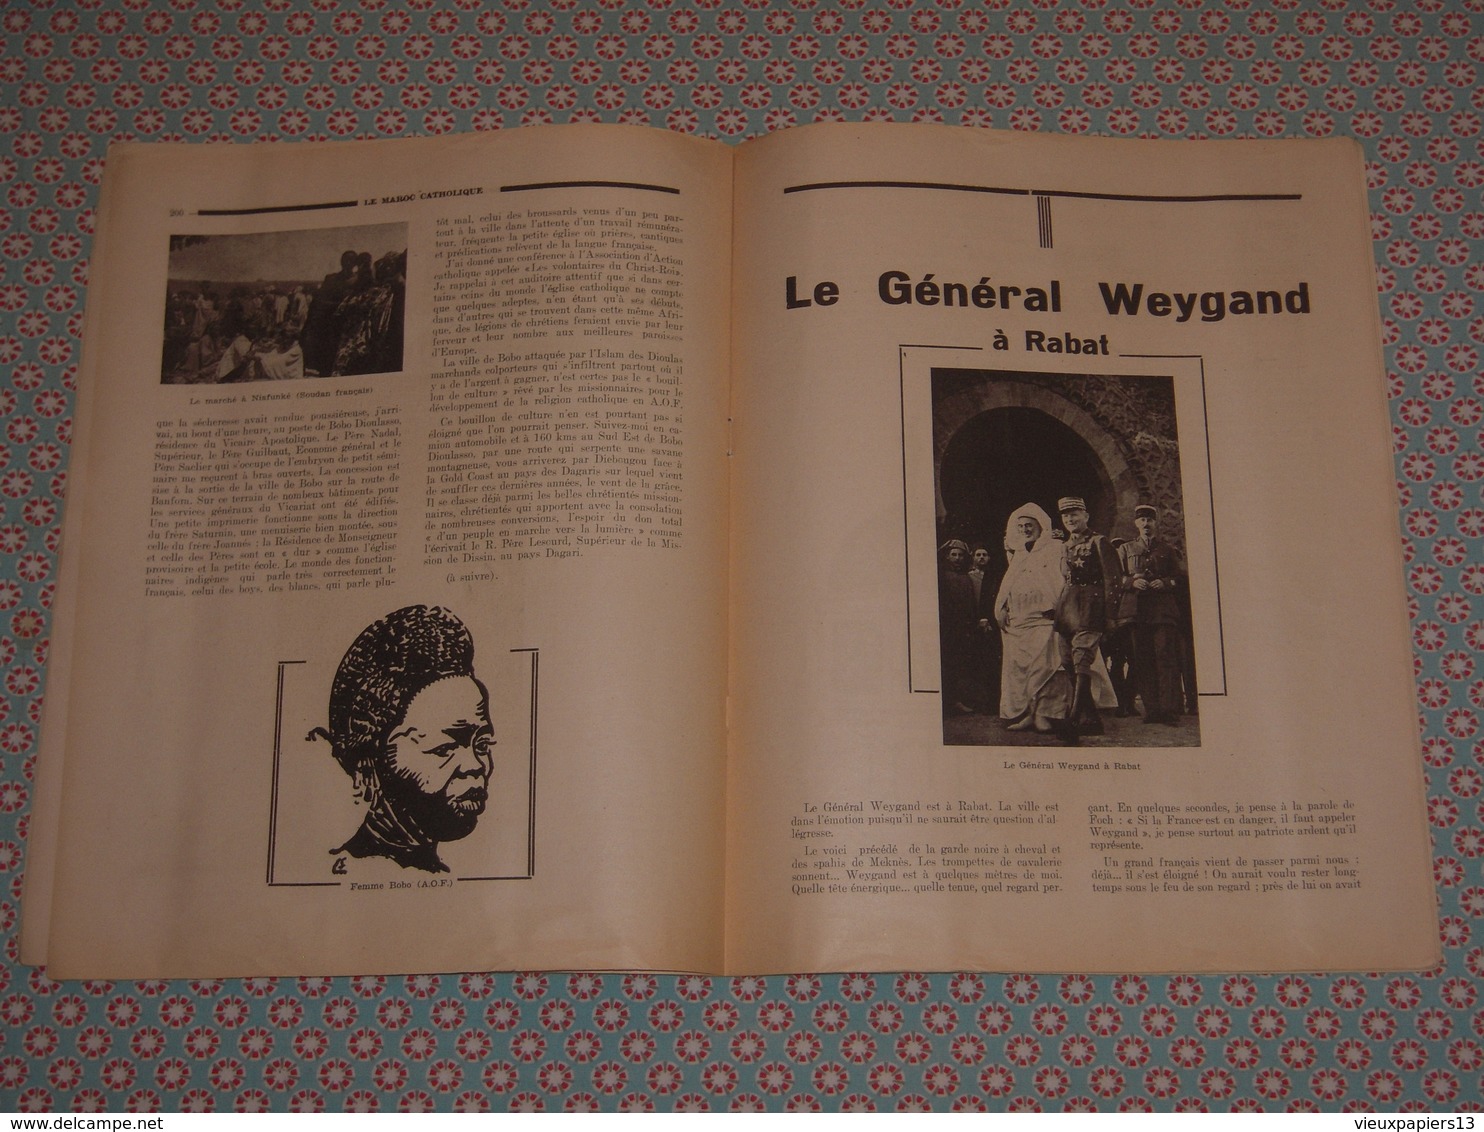 Le Maroc Catholique n°8 Aout 1941 - P.P Franciscains Rabat - le Comte de Paris, Michel & Jacques de France, Weygand &c.